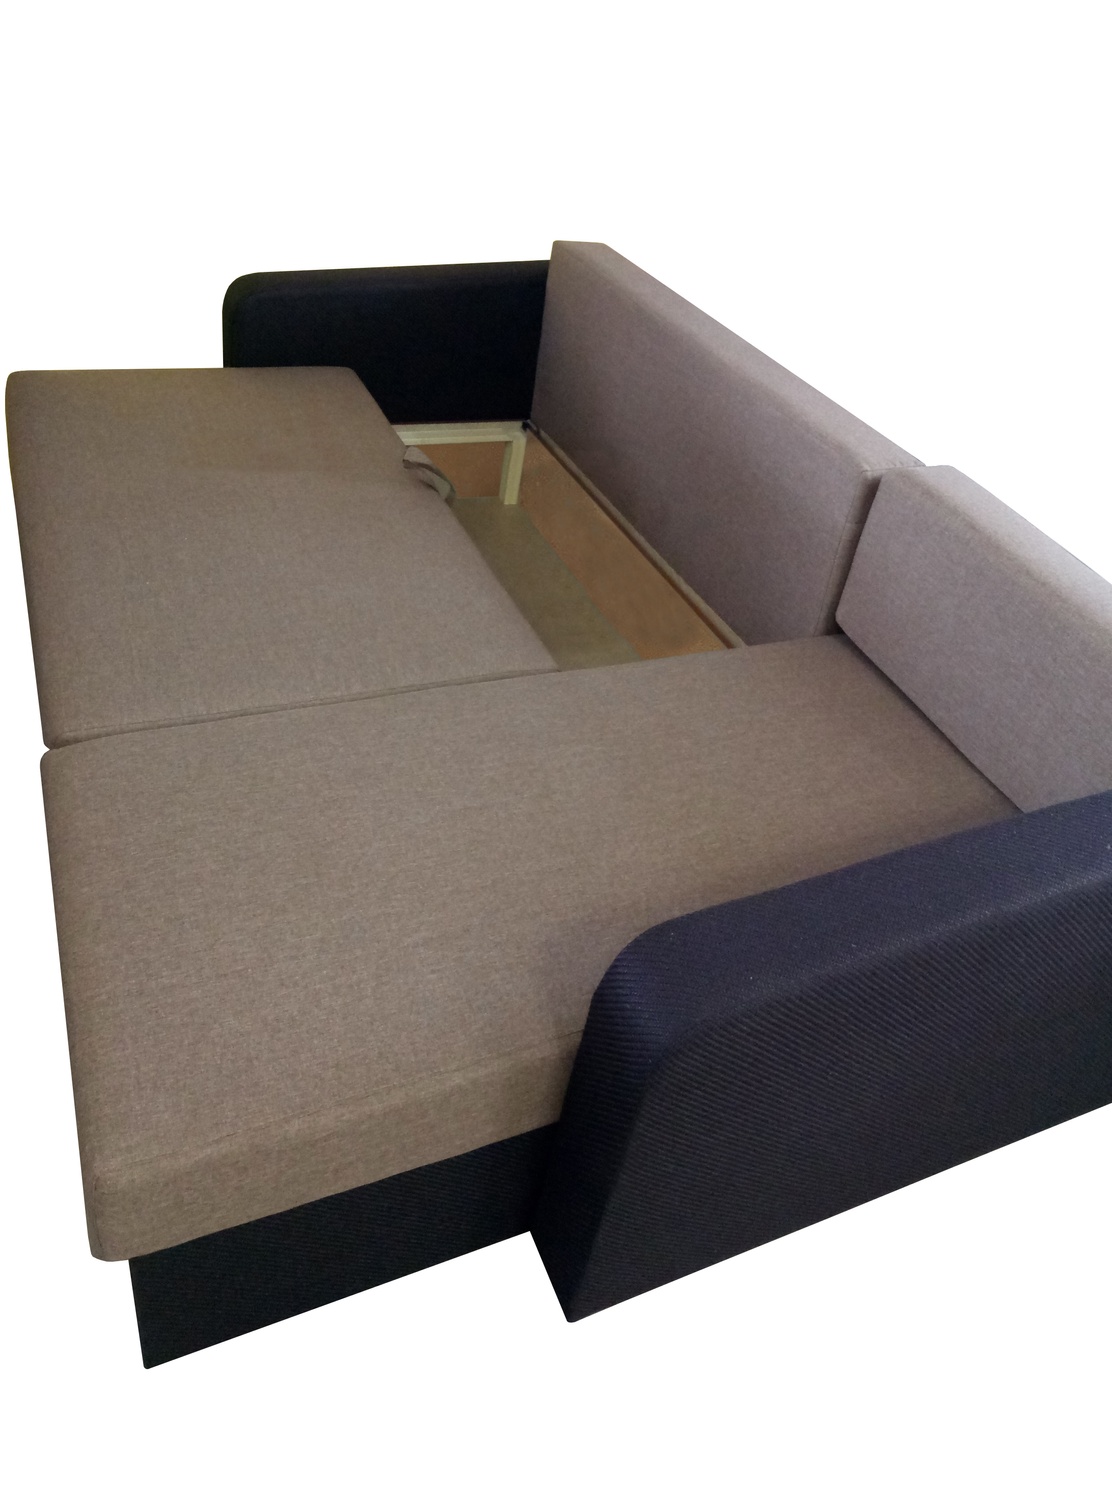 Кутовий диван Париж (бежевий з коричневим, 235х150 см) IMI kprz-sn-21-3 фото